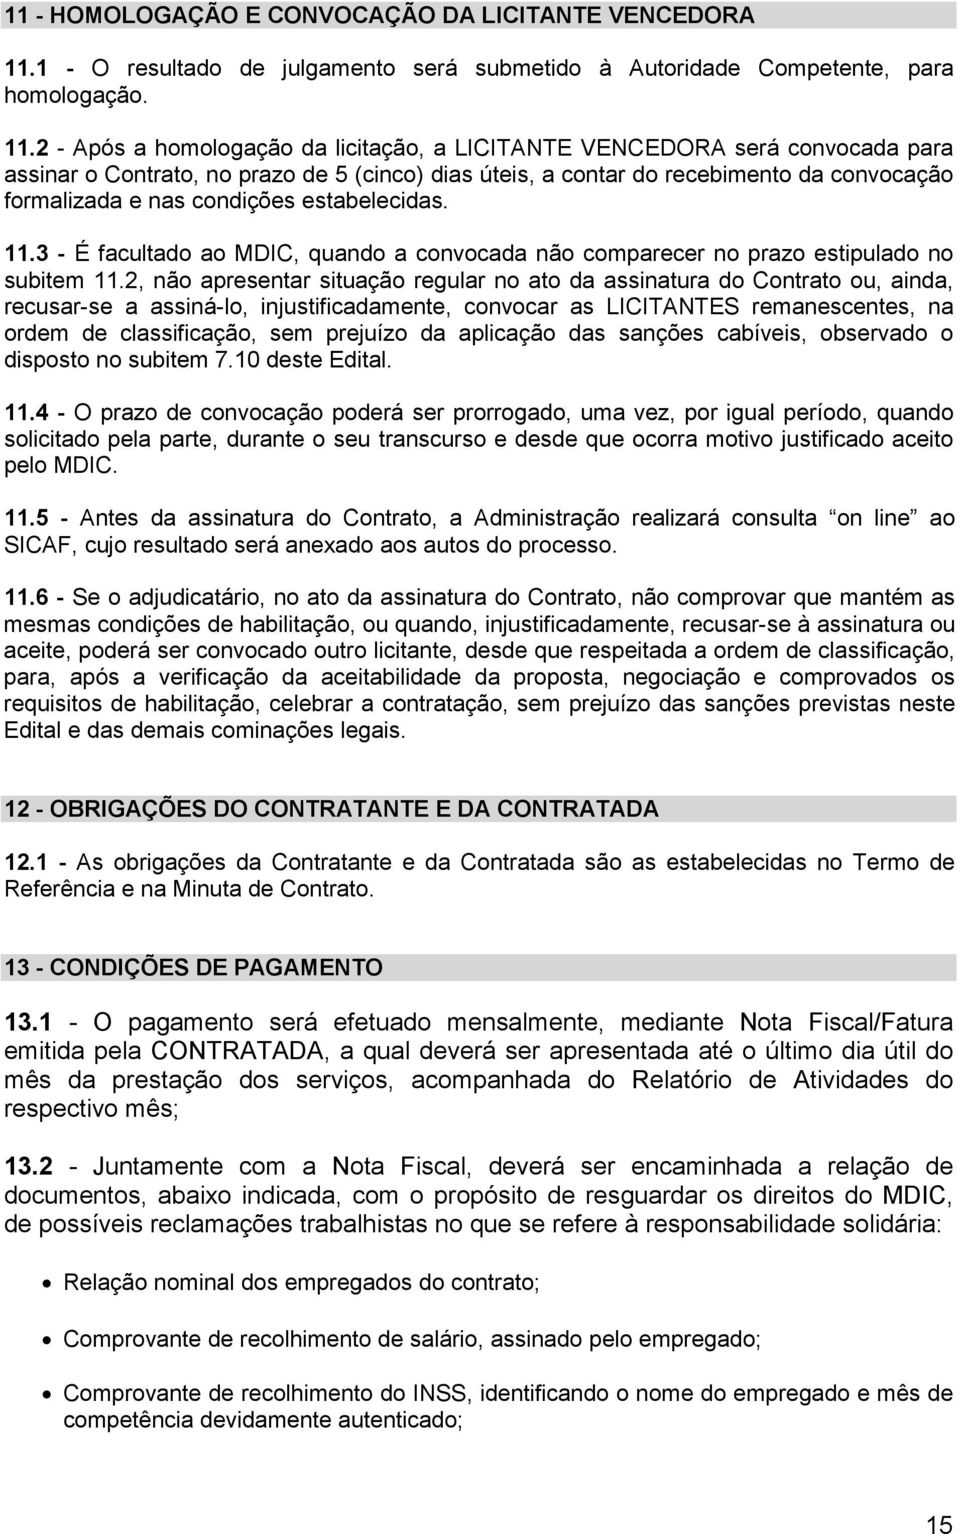 2 - Após a homologação da licitação, a LICITANTE VENCEDORA será convocada para assinar o Contrato, no prazo de 5 (cinco) dias úteis, a contar do recebimento da convocação formalizada e nas condições